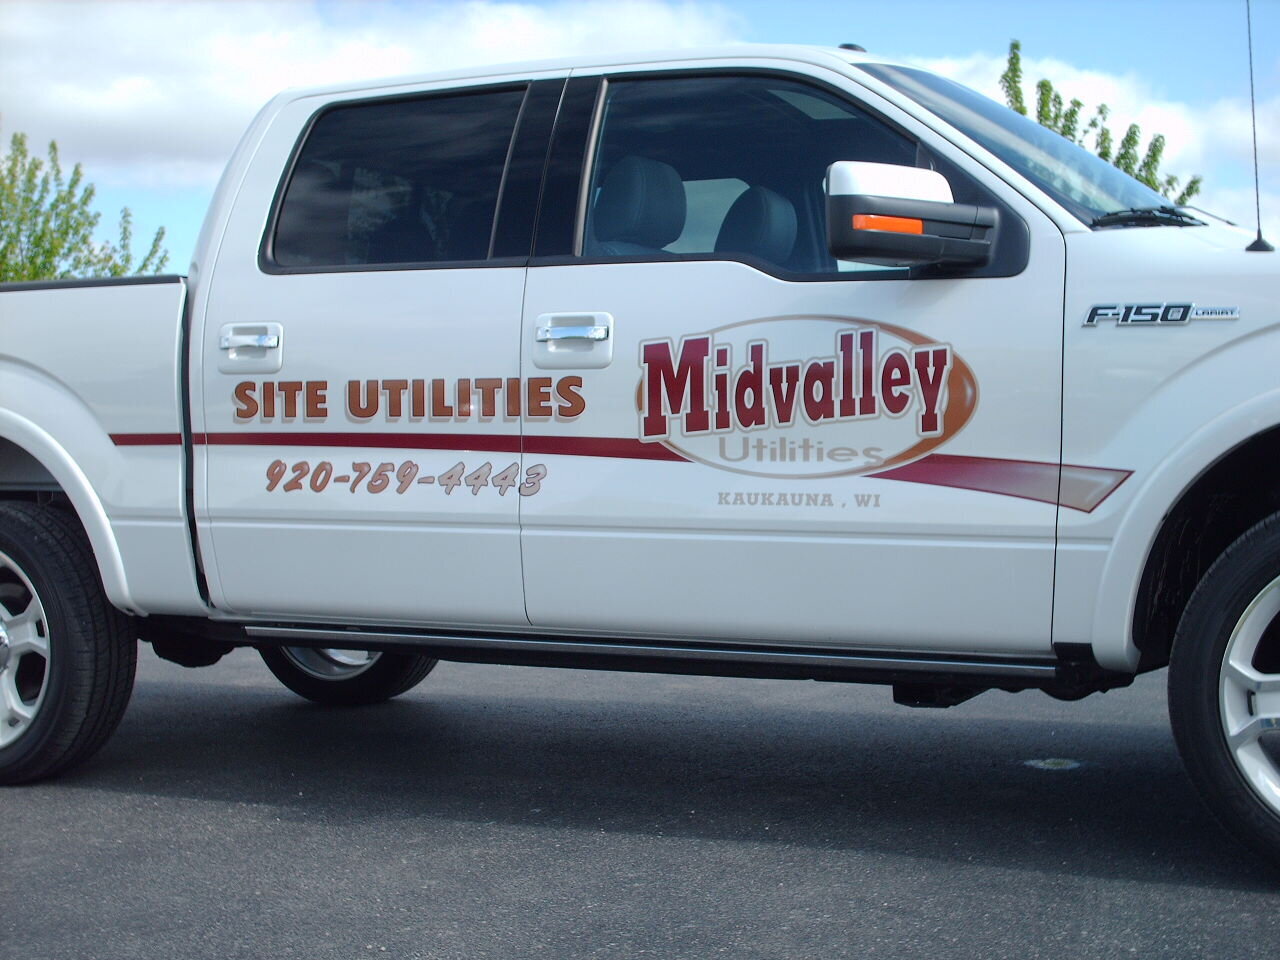 Midvalley Utilities truck